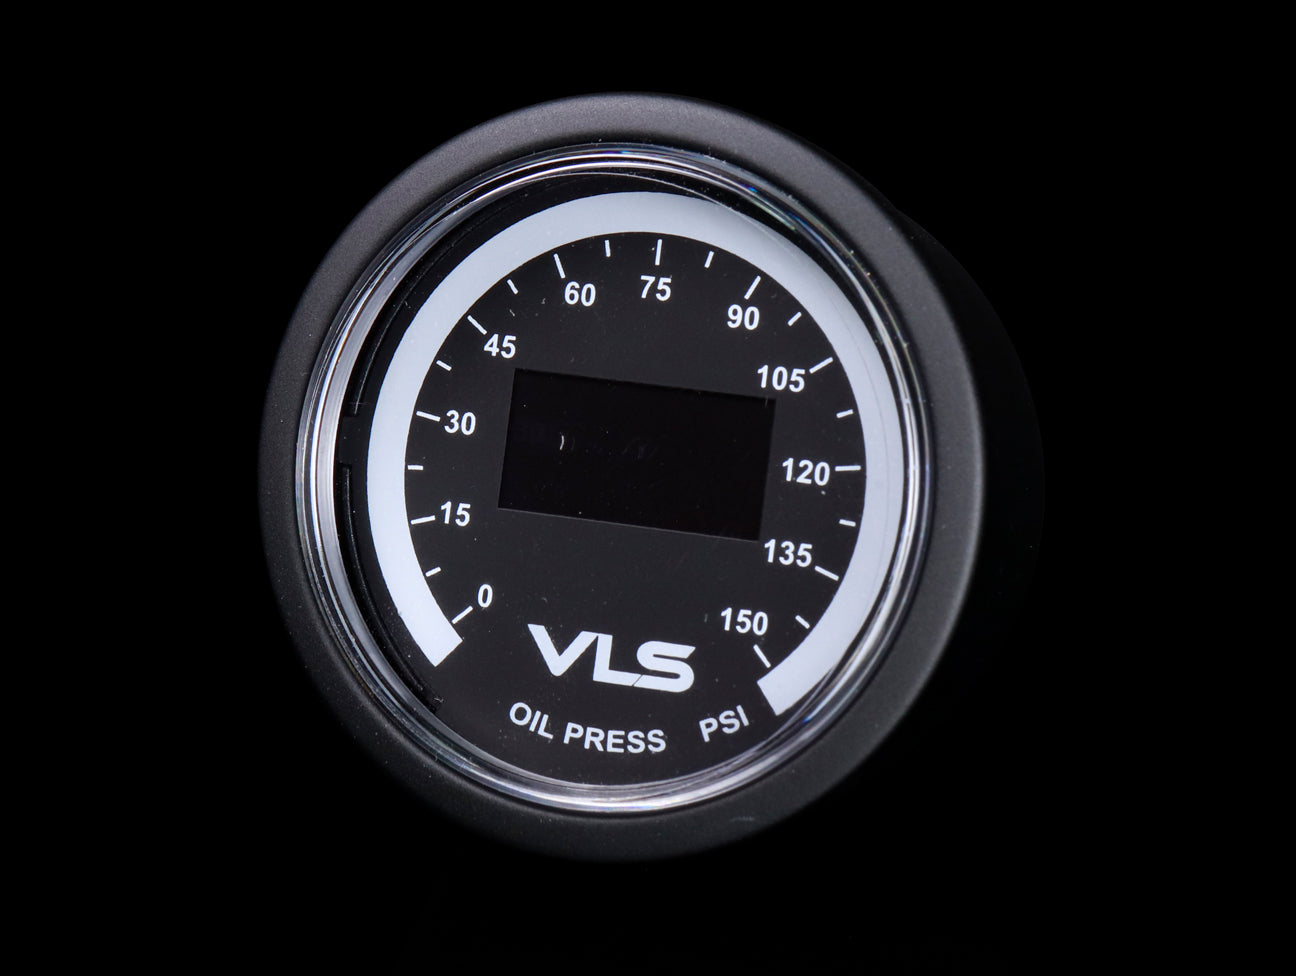 Tanabe Revel VLS Oil Pressure Gauge 0-150PSI (52mm)